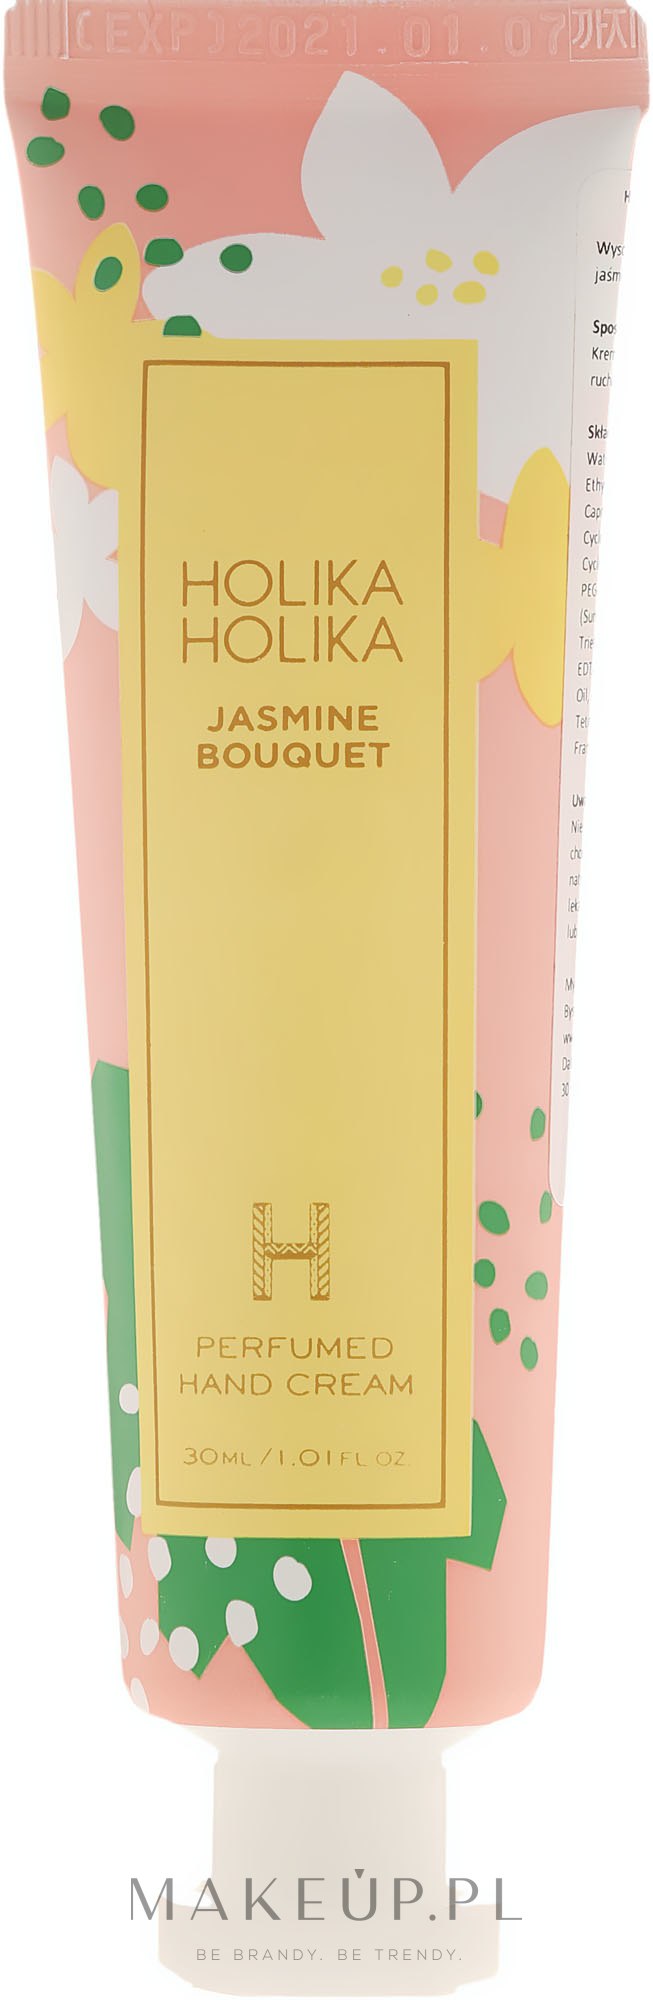 Perfumowany krem do rąk Jaśminowy bukiet - Holika Holika Jasmine Bouquet Perfumed Hand Cream — Zdjęcie 30 ml